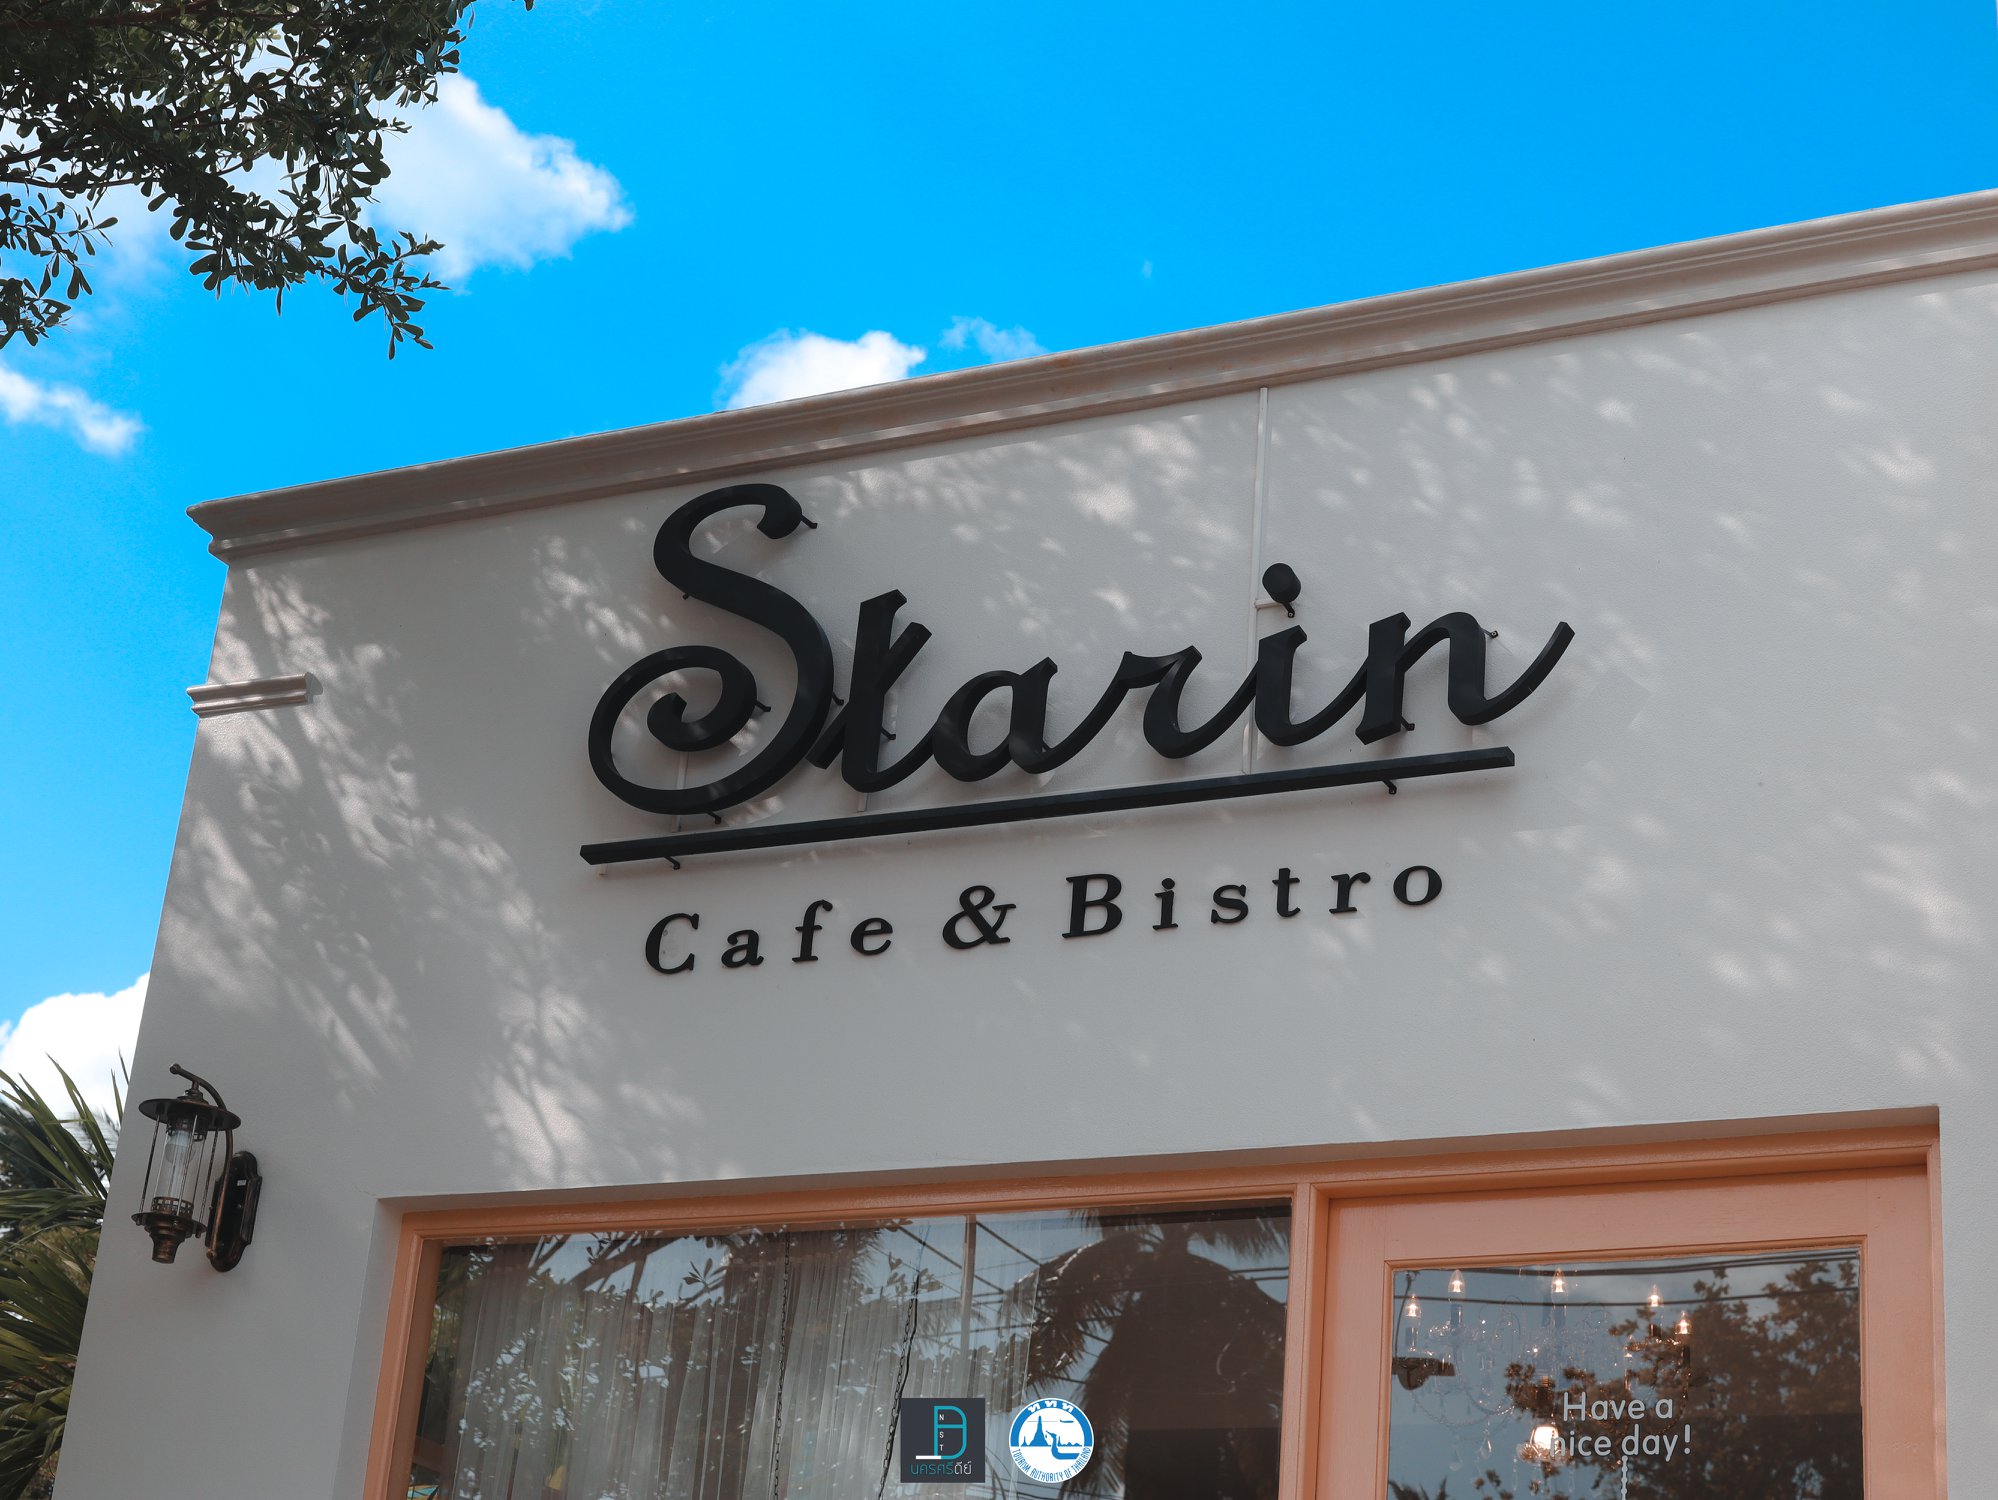  6.-Starin-Cafe-Bistro-ร้านนี้ขอบอกว่า-Amazing-จริงๆ-เป็นร้านโทนสีขาวปนสีชมพูอ่อนๆ-มีผ้าม่านสีขาวๆ-ออกแบบสไตล์เจ้าหญิงในไทยนิยายอะไรแบบนั้น-แอดชอบบบบบ-ถ่ายรูปสวยด้วยนะเออ คาเฟ่,สตูล,เด็ด,จุดเช็คอิน,อร่อย,ร้านอาหาร,จุดถ่ายรูป,สถานที่ท่องเที่ยว